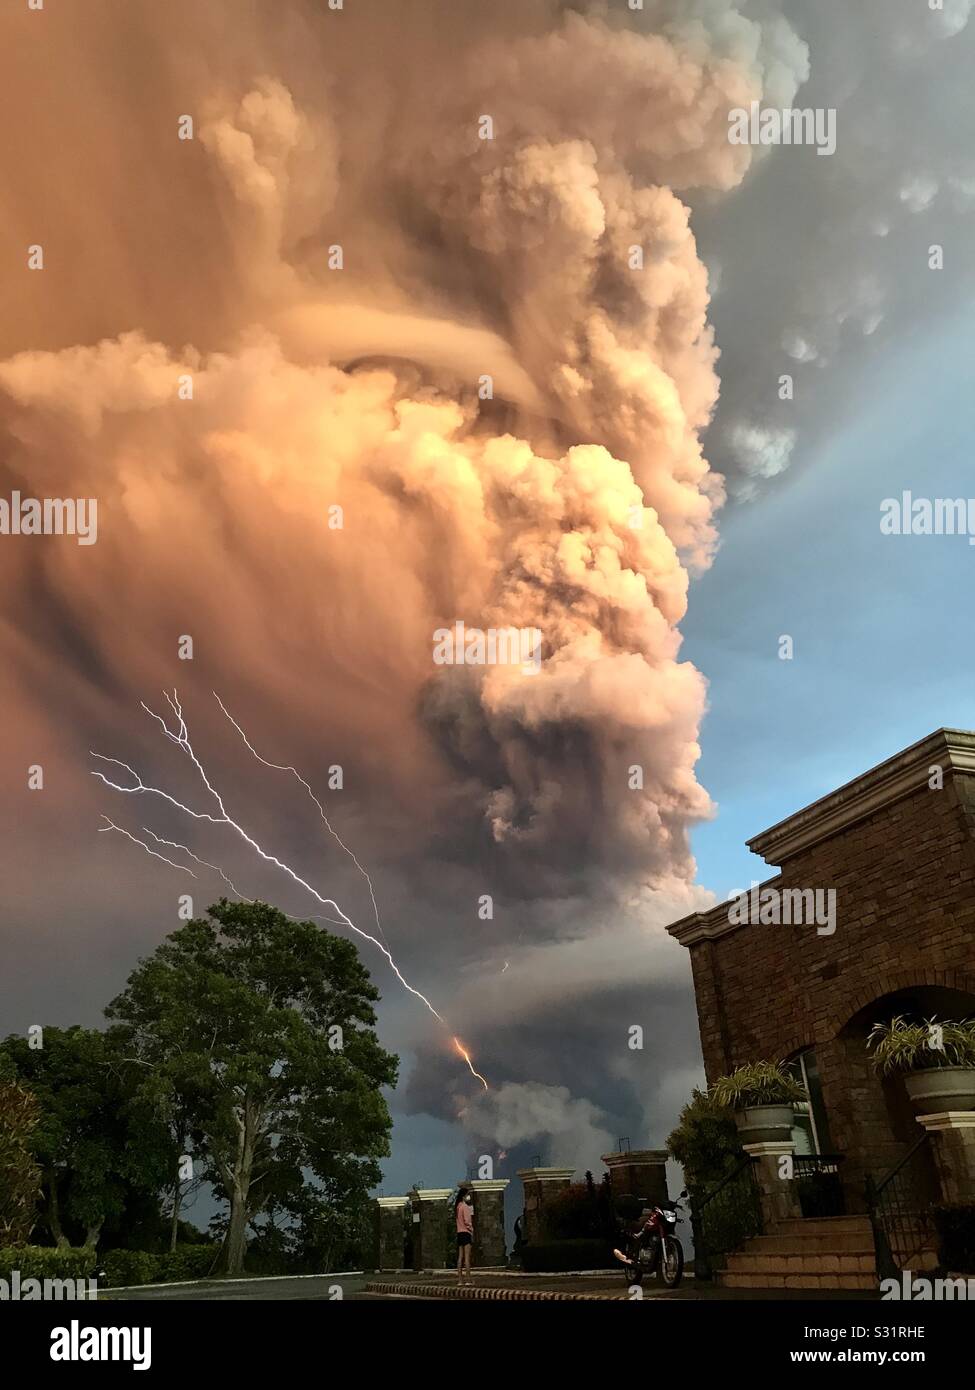 Il vulcano Taal a Batangas, nelle Filippine, è scoppiato a causa di un'esplosione freatica. Il vapore si verifica quando l'acqua sottostante viene riscaldata da lava o depositi vulcanici. Pioggia, tuono, fulmini e terremoto. Foto Stock